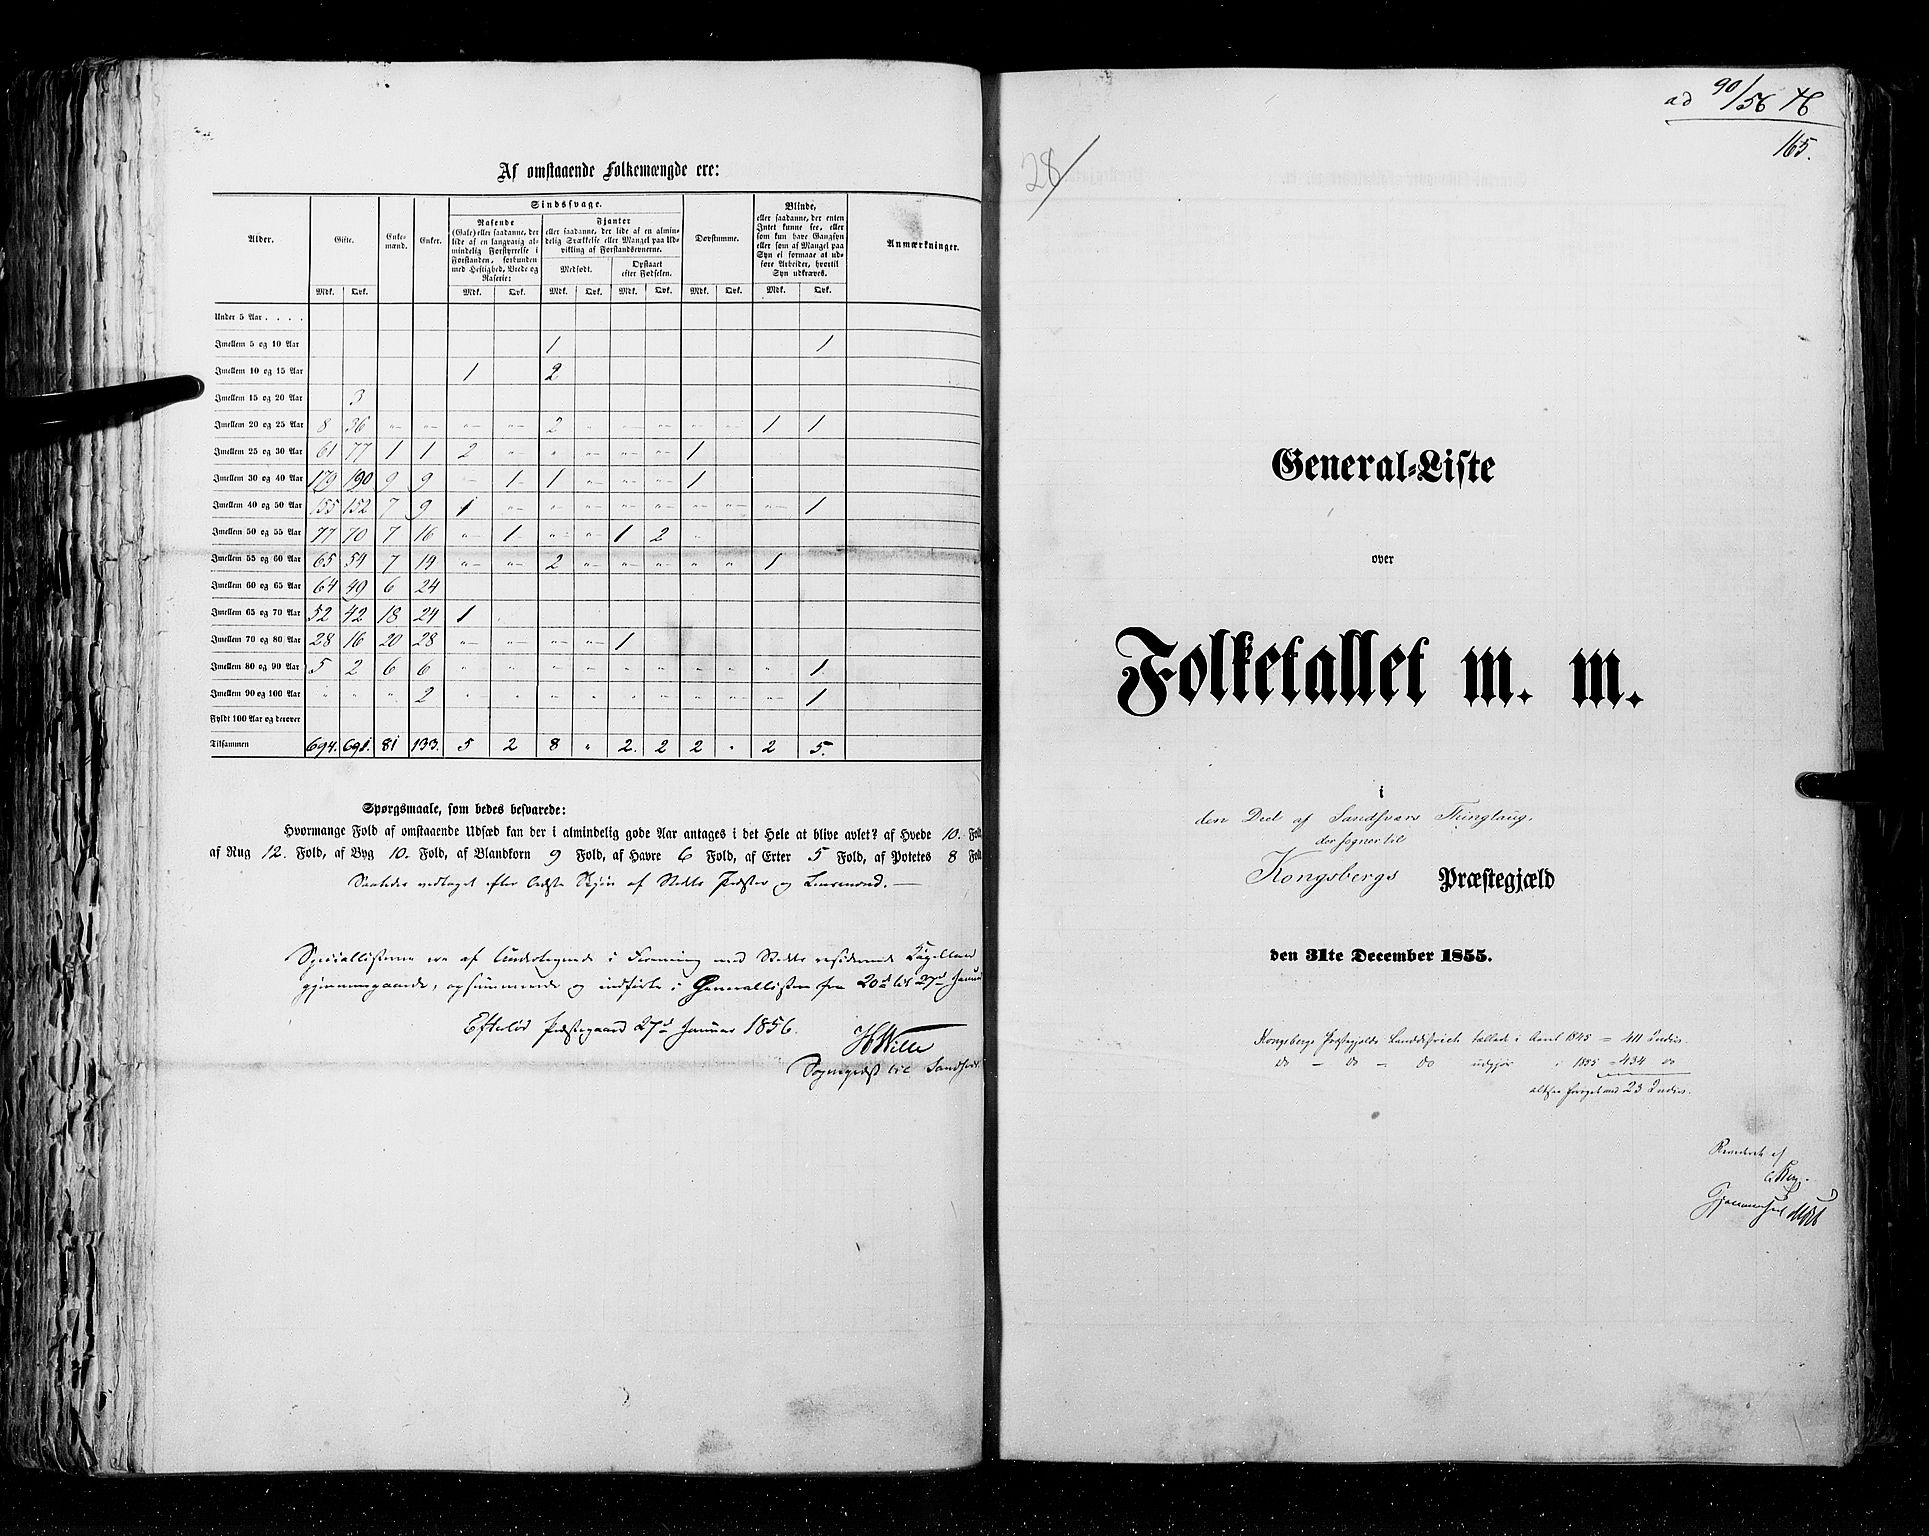 RA, Census 1855, vol. 2: Kristians amt, Buskerud amt og Jarlsberg og Larvik amt, 1855, p. 165